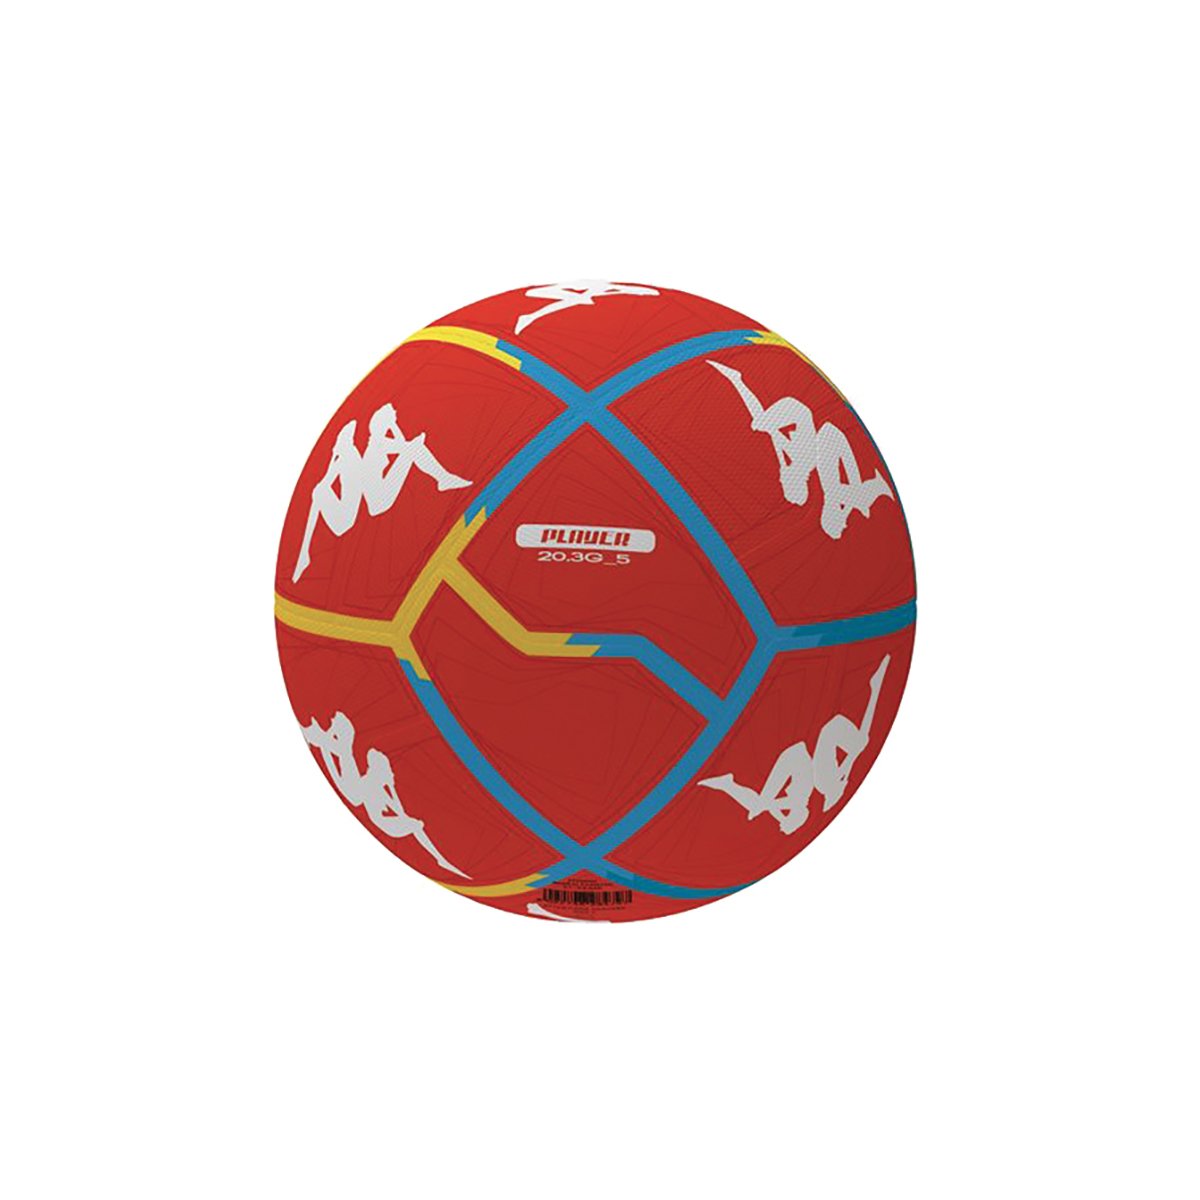 Ballon de football Player 20.3G Unisexe - image 1